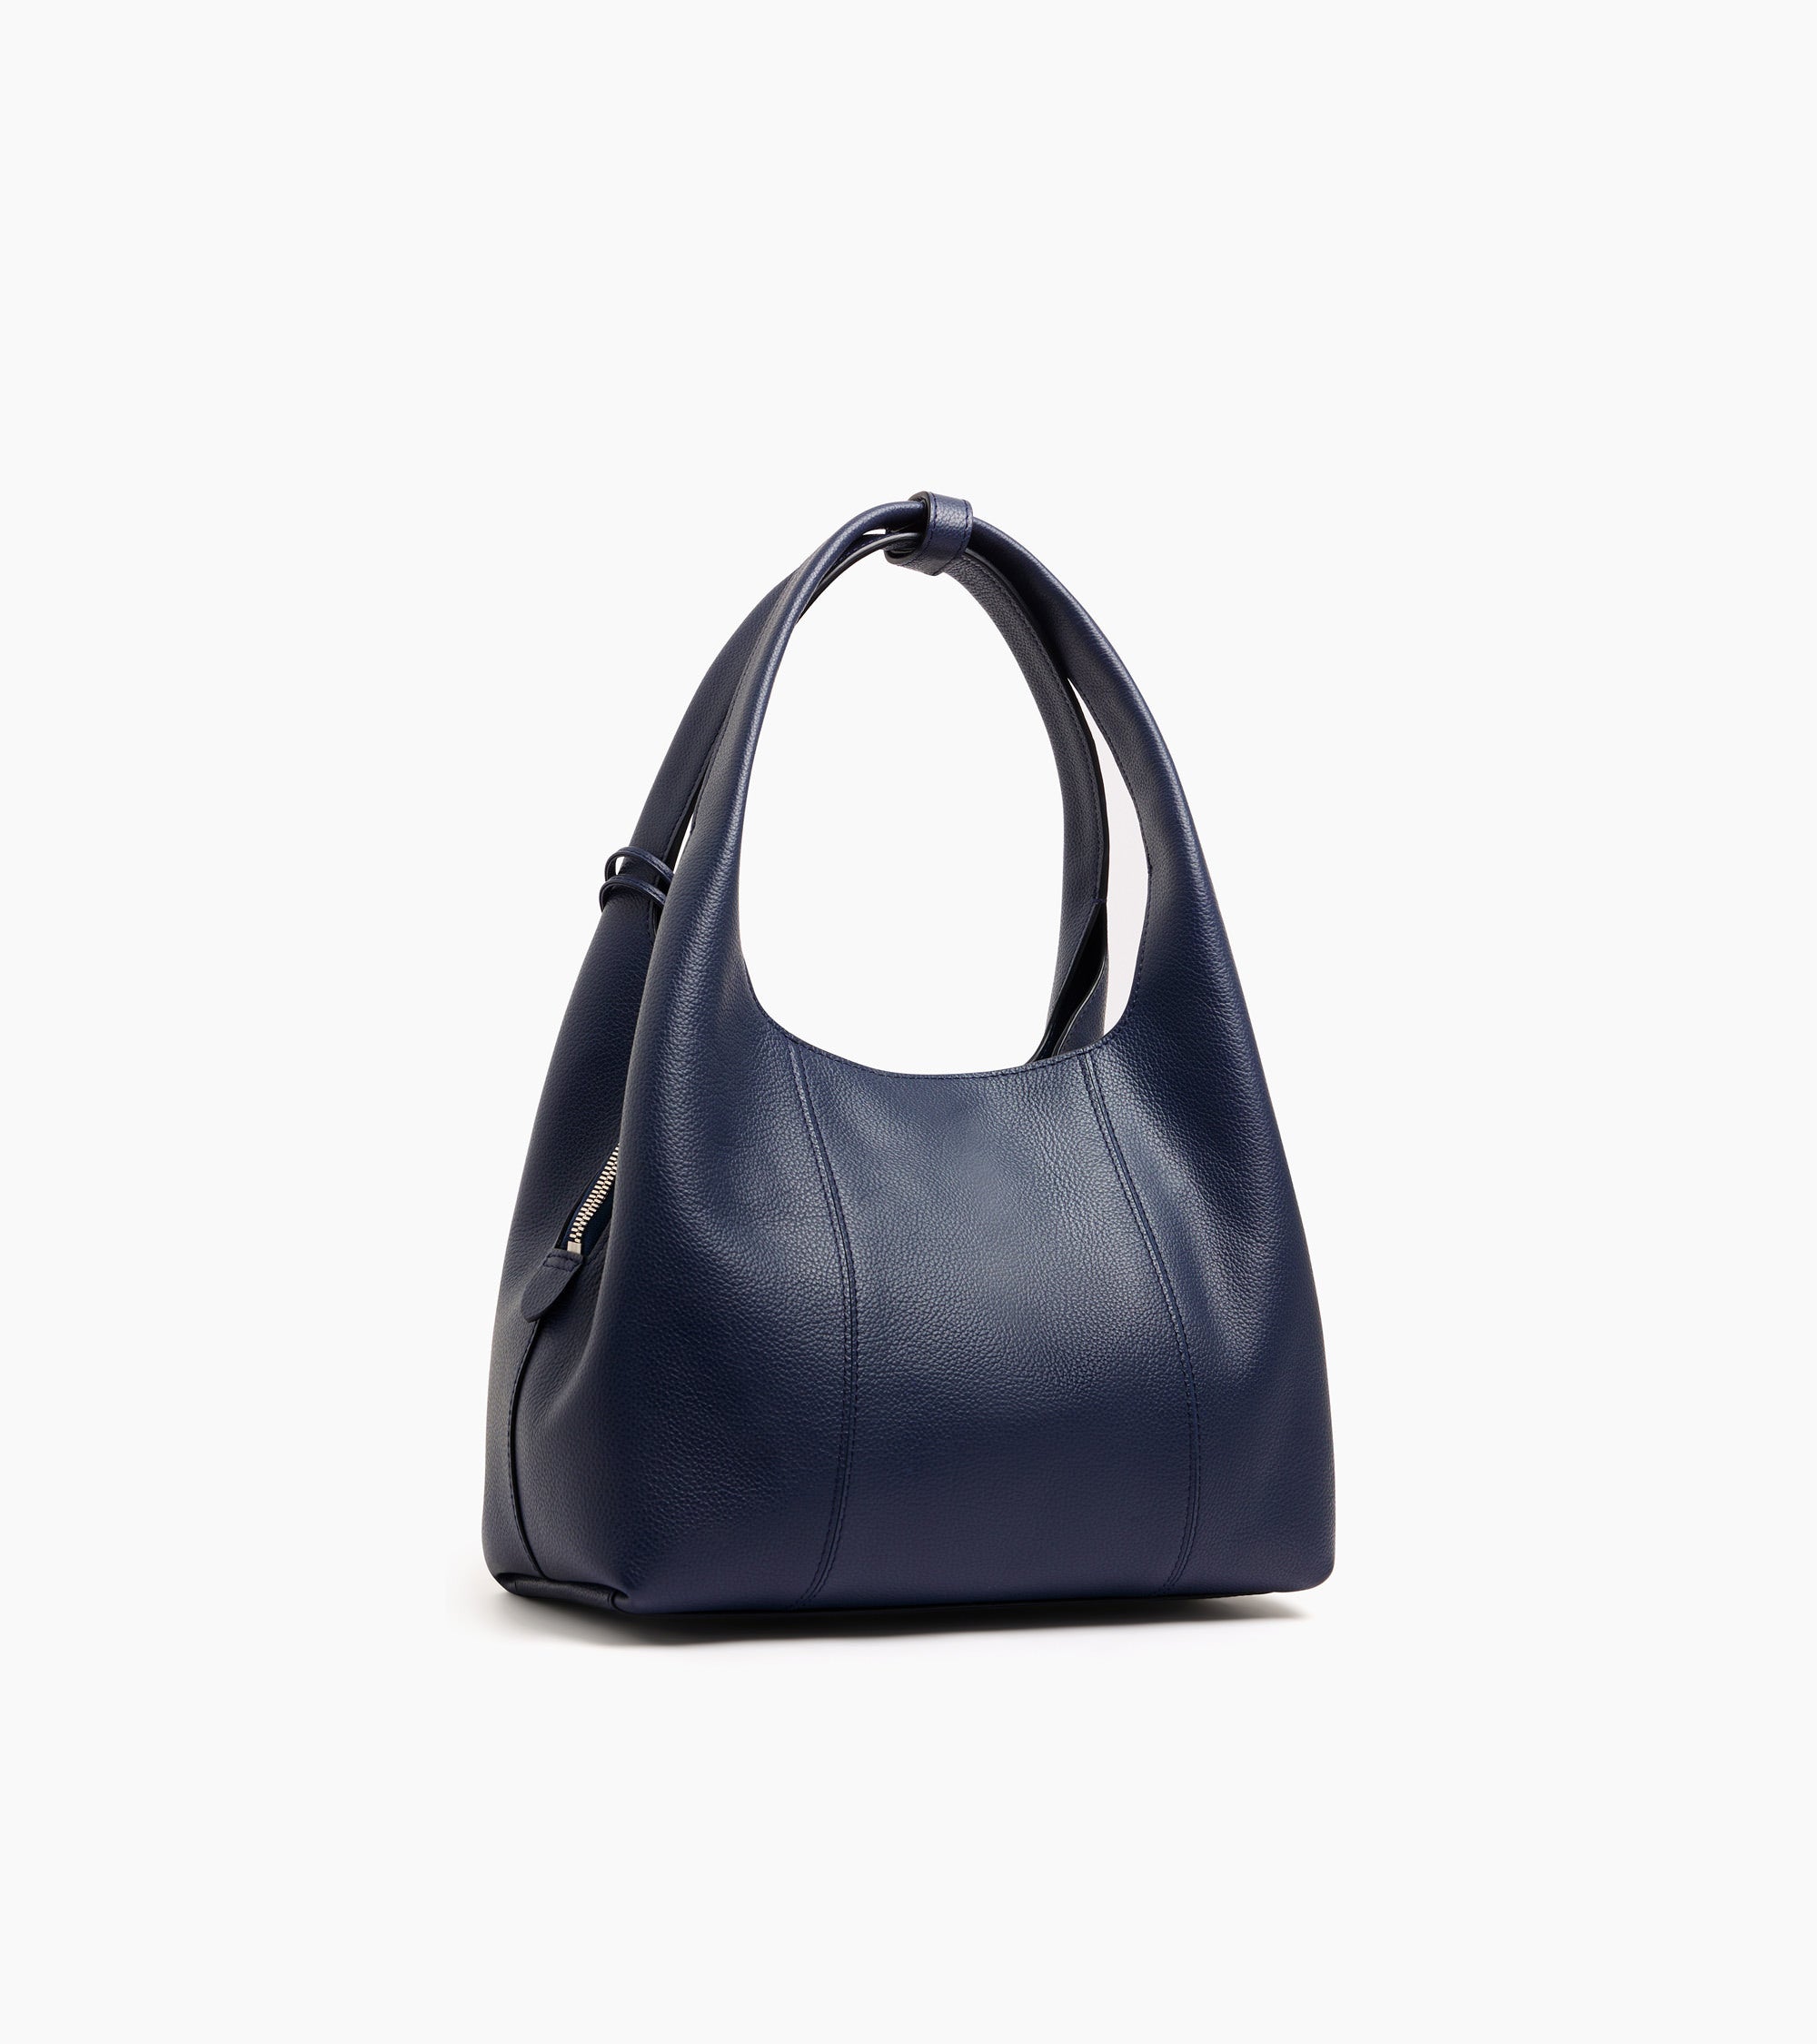 Juliette medium-sized shoulder bag in pebbled leather